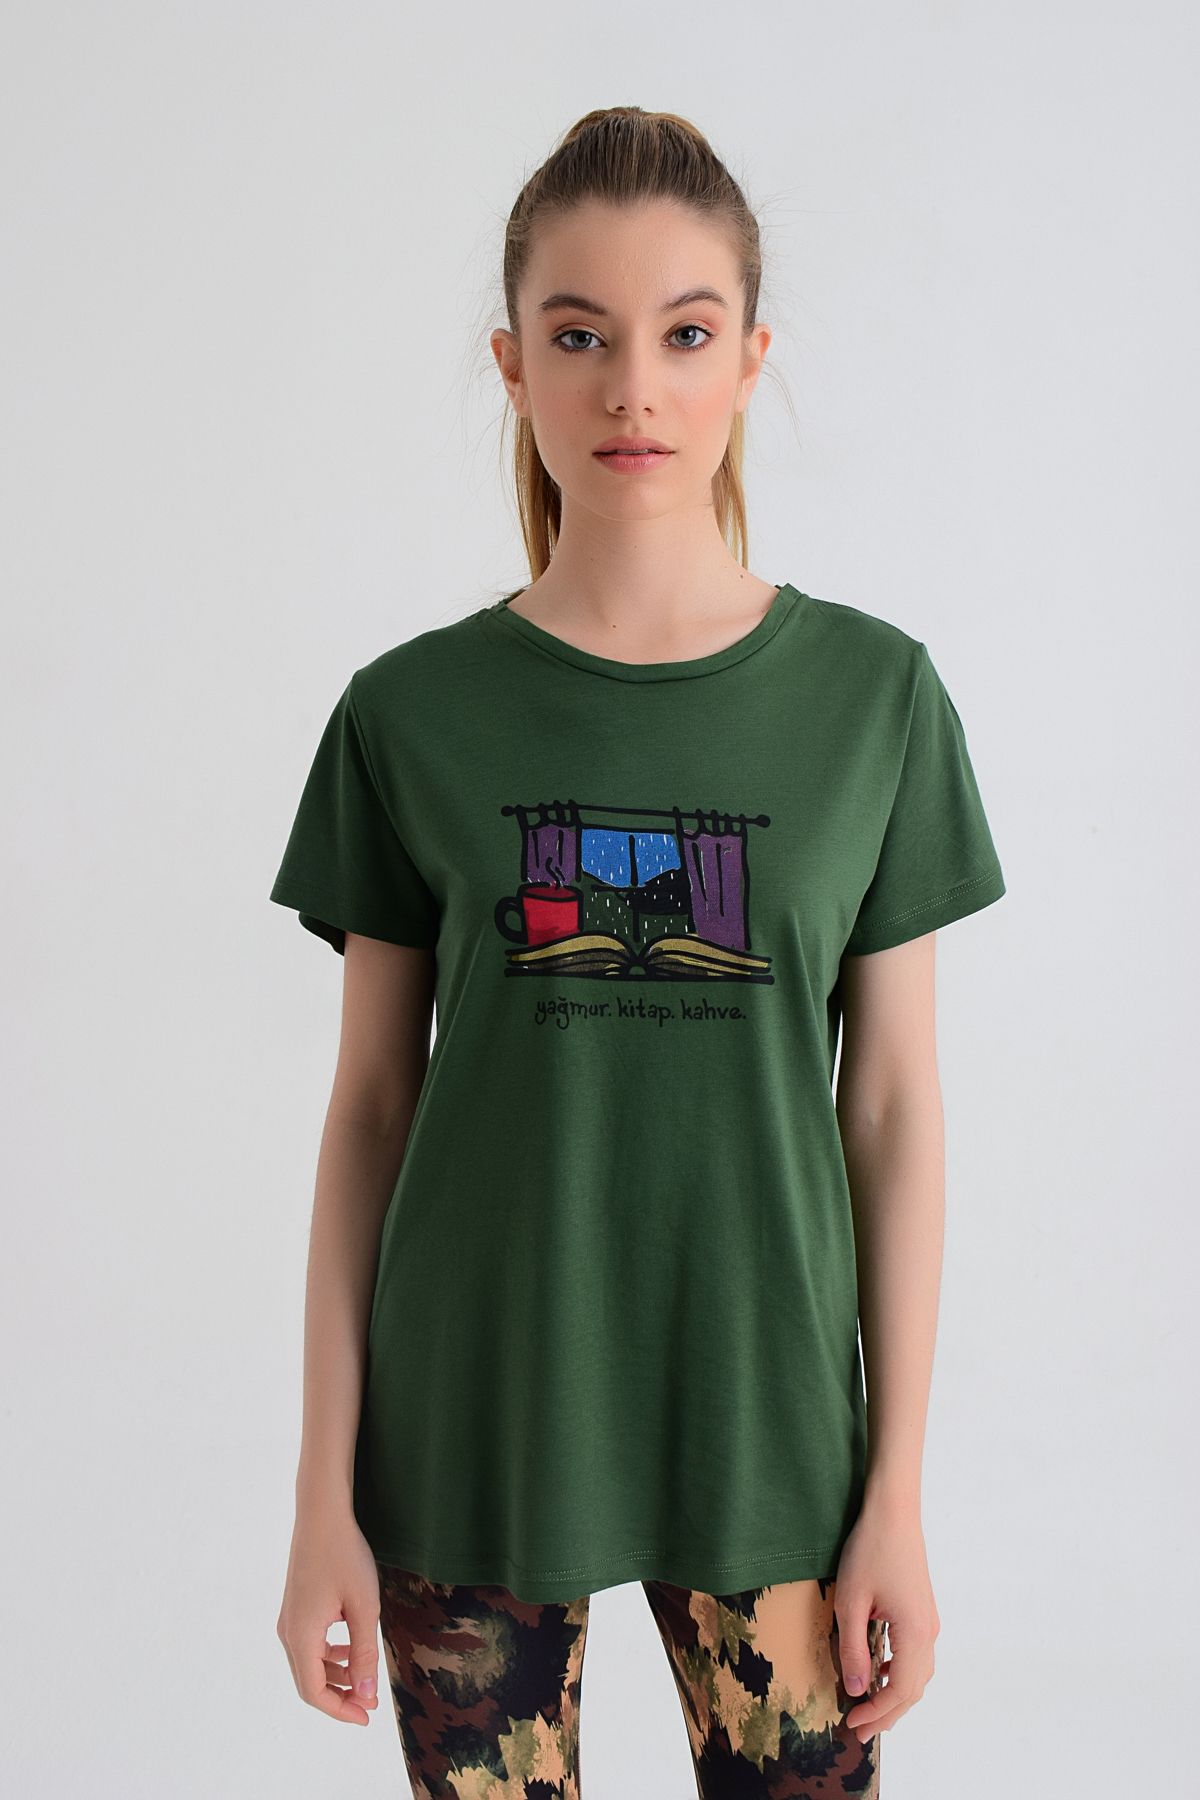 b-fit Kadın Kısa Kollu Baskılı T-shirt Wormie Elma Kurdu - Yeşil